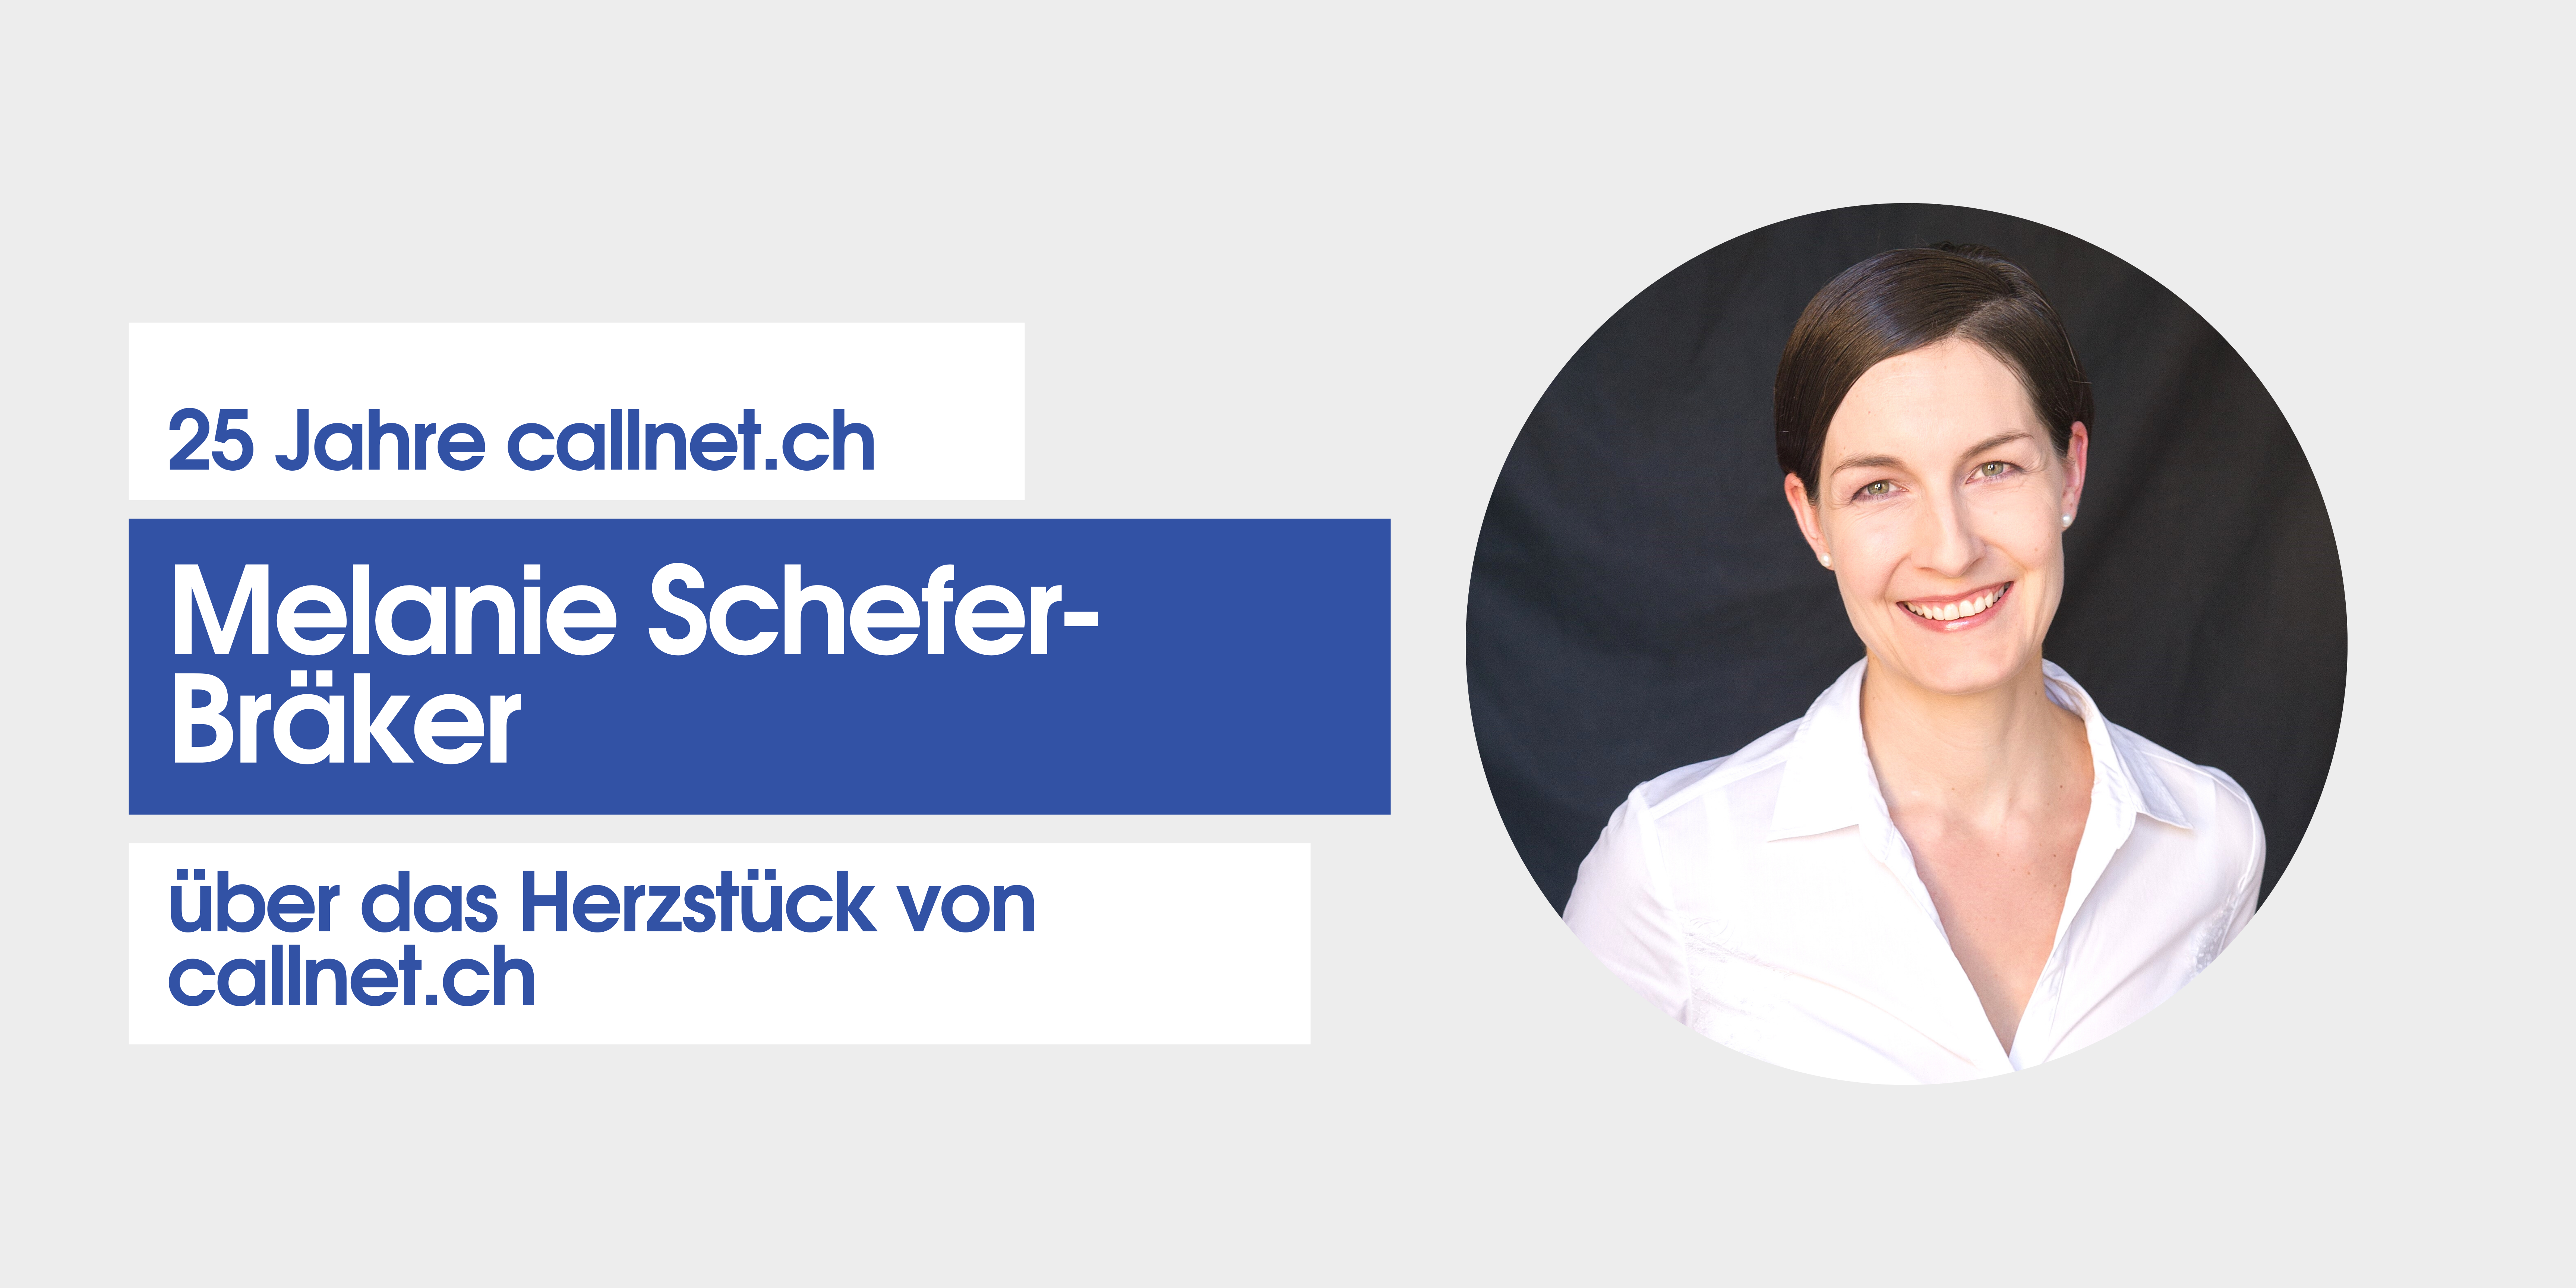 Melanie Schefer-Bräker über das Herzstück von callnet.ch